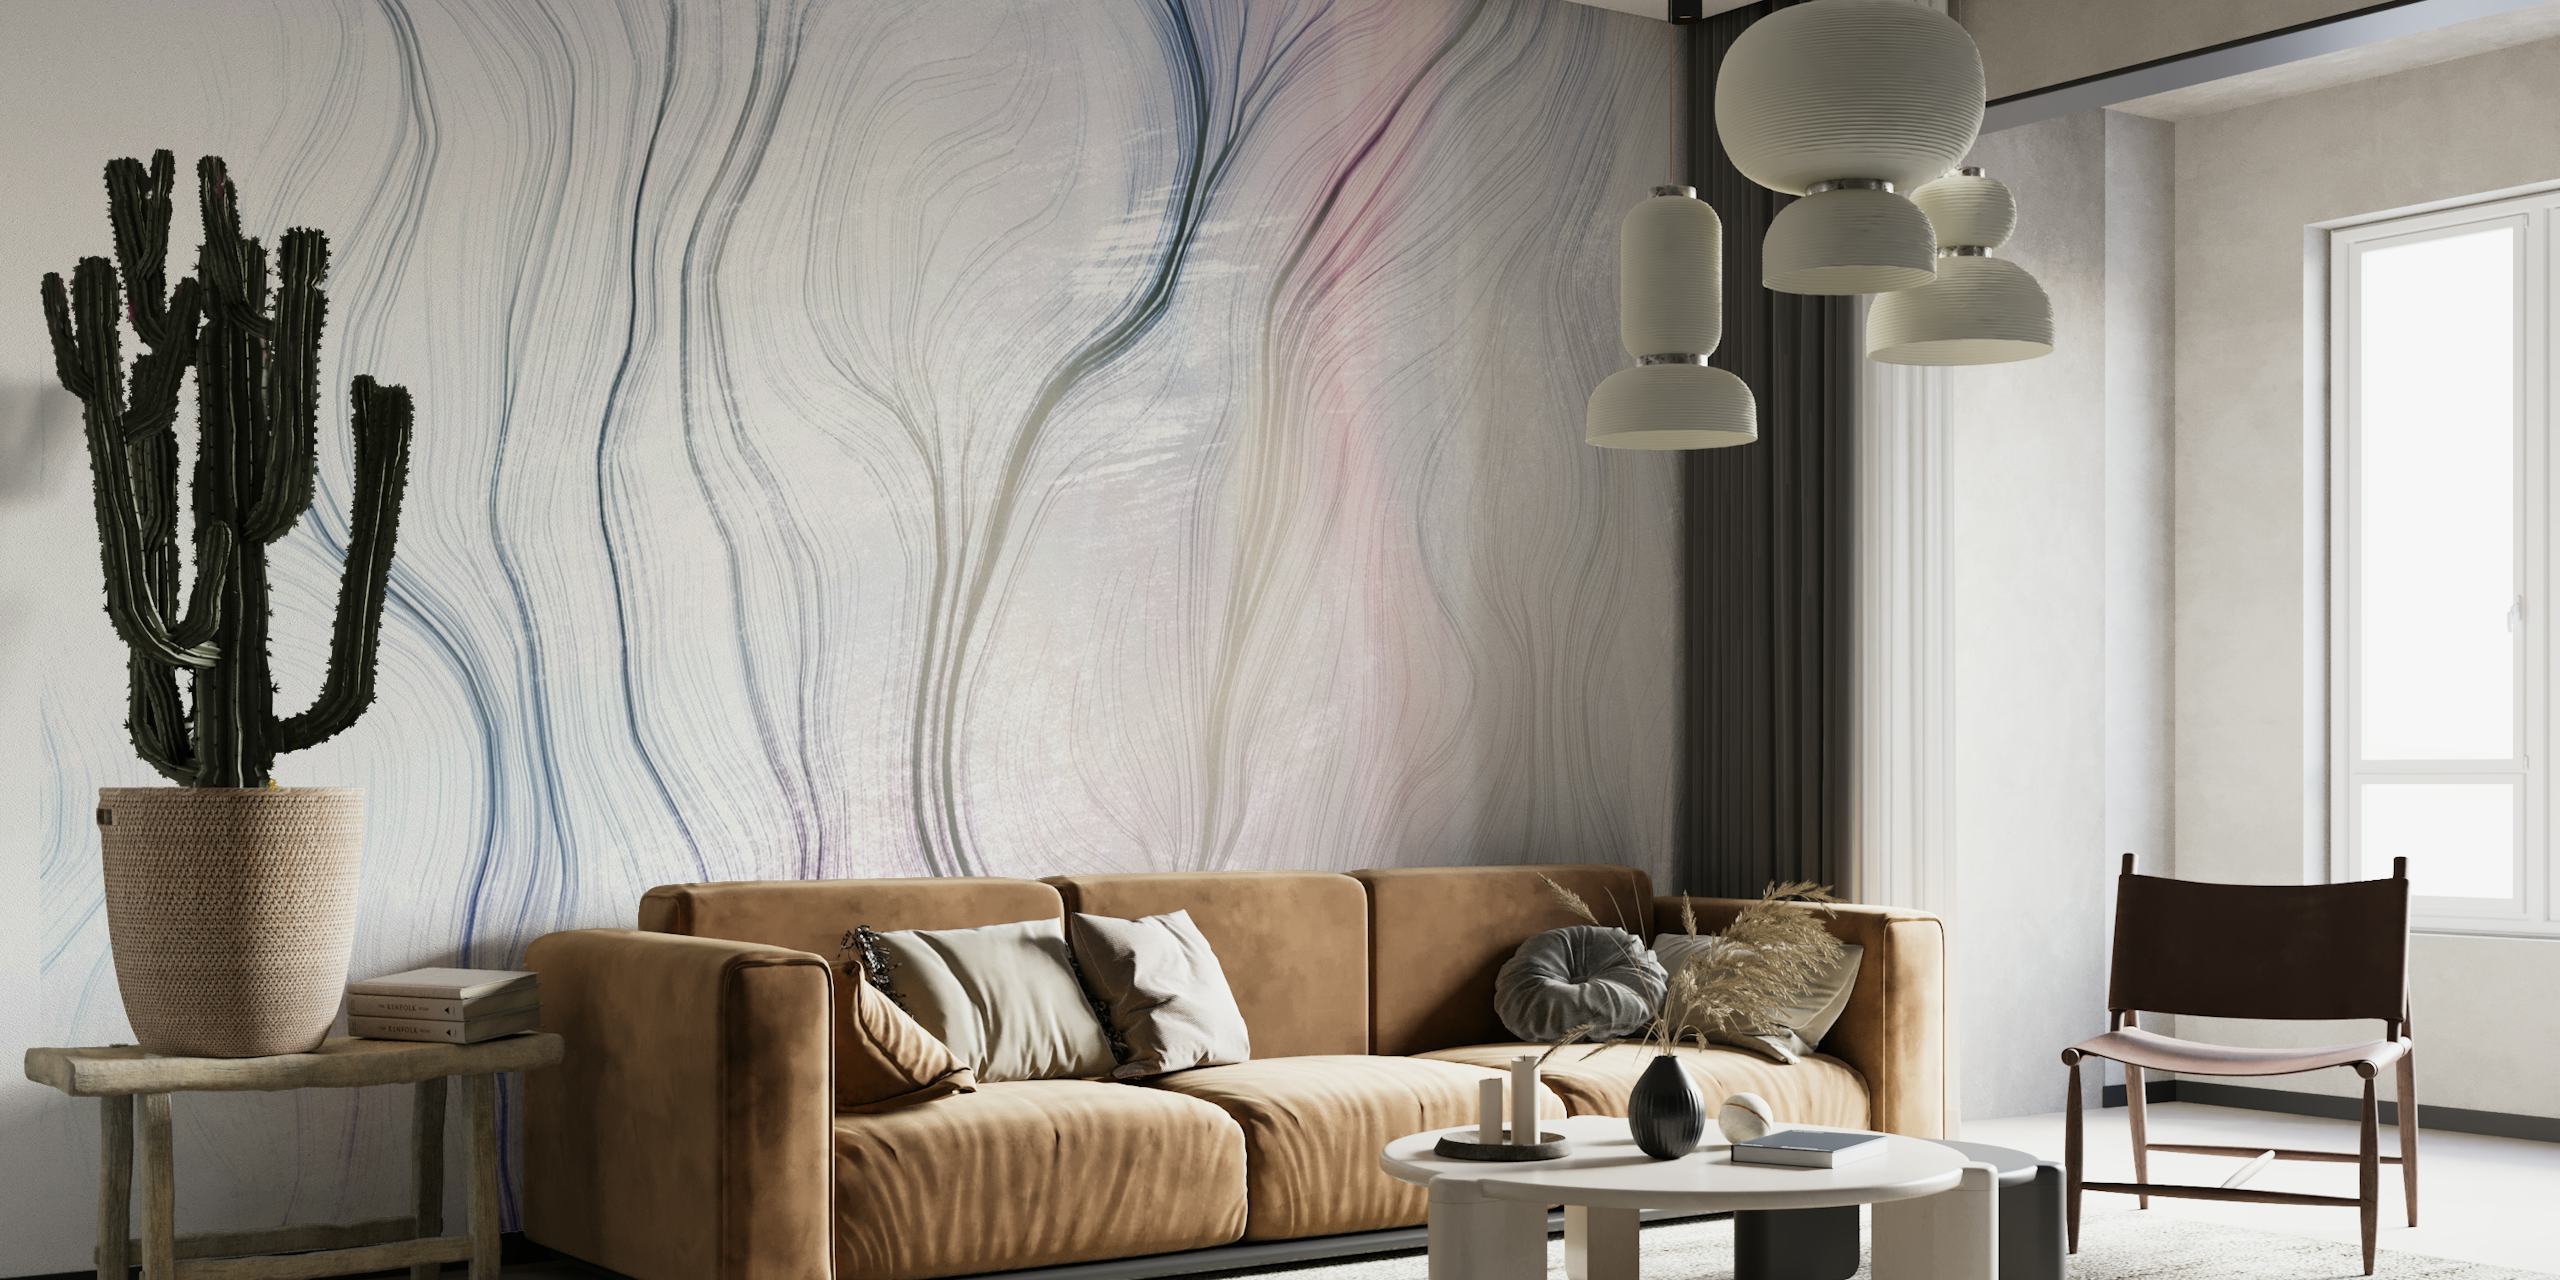 Zidni mural apstraktnih pastelnih linija 'Put 1' za spokojan dekor sobe.